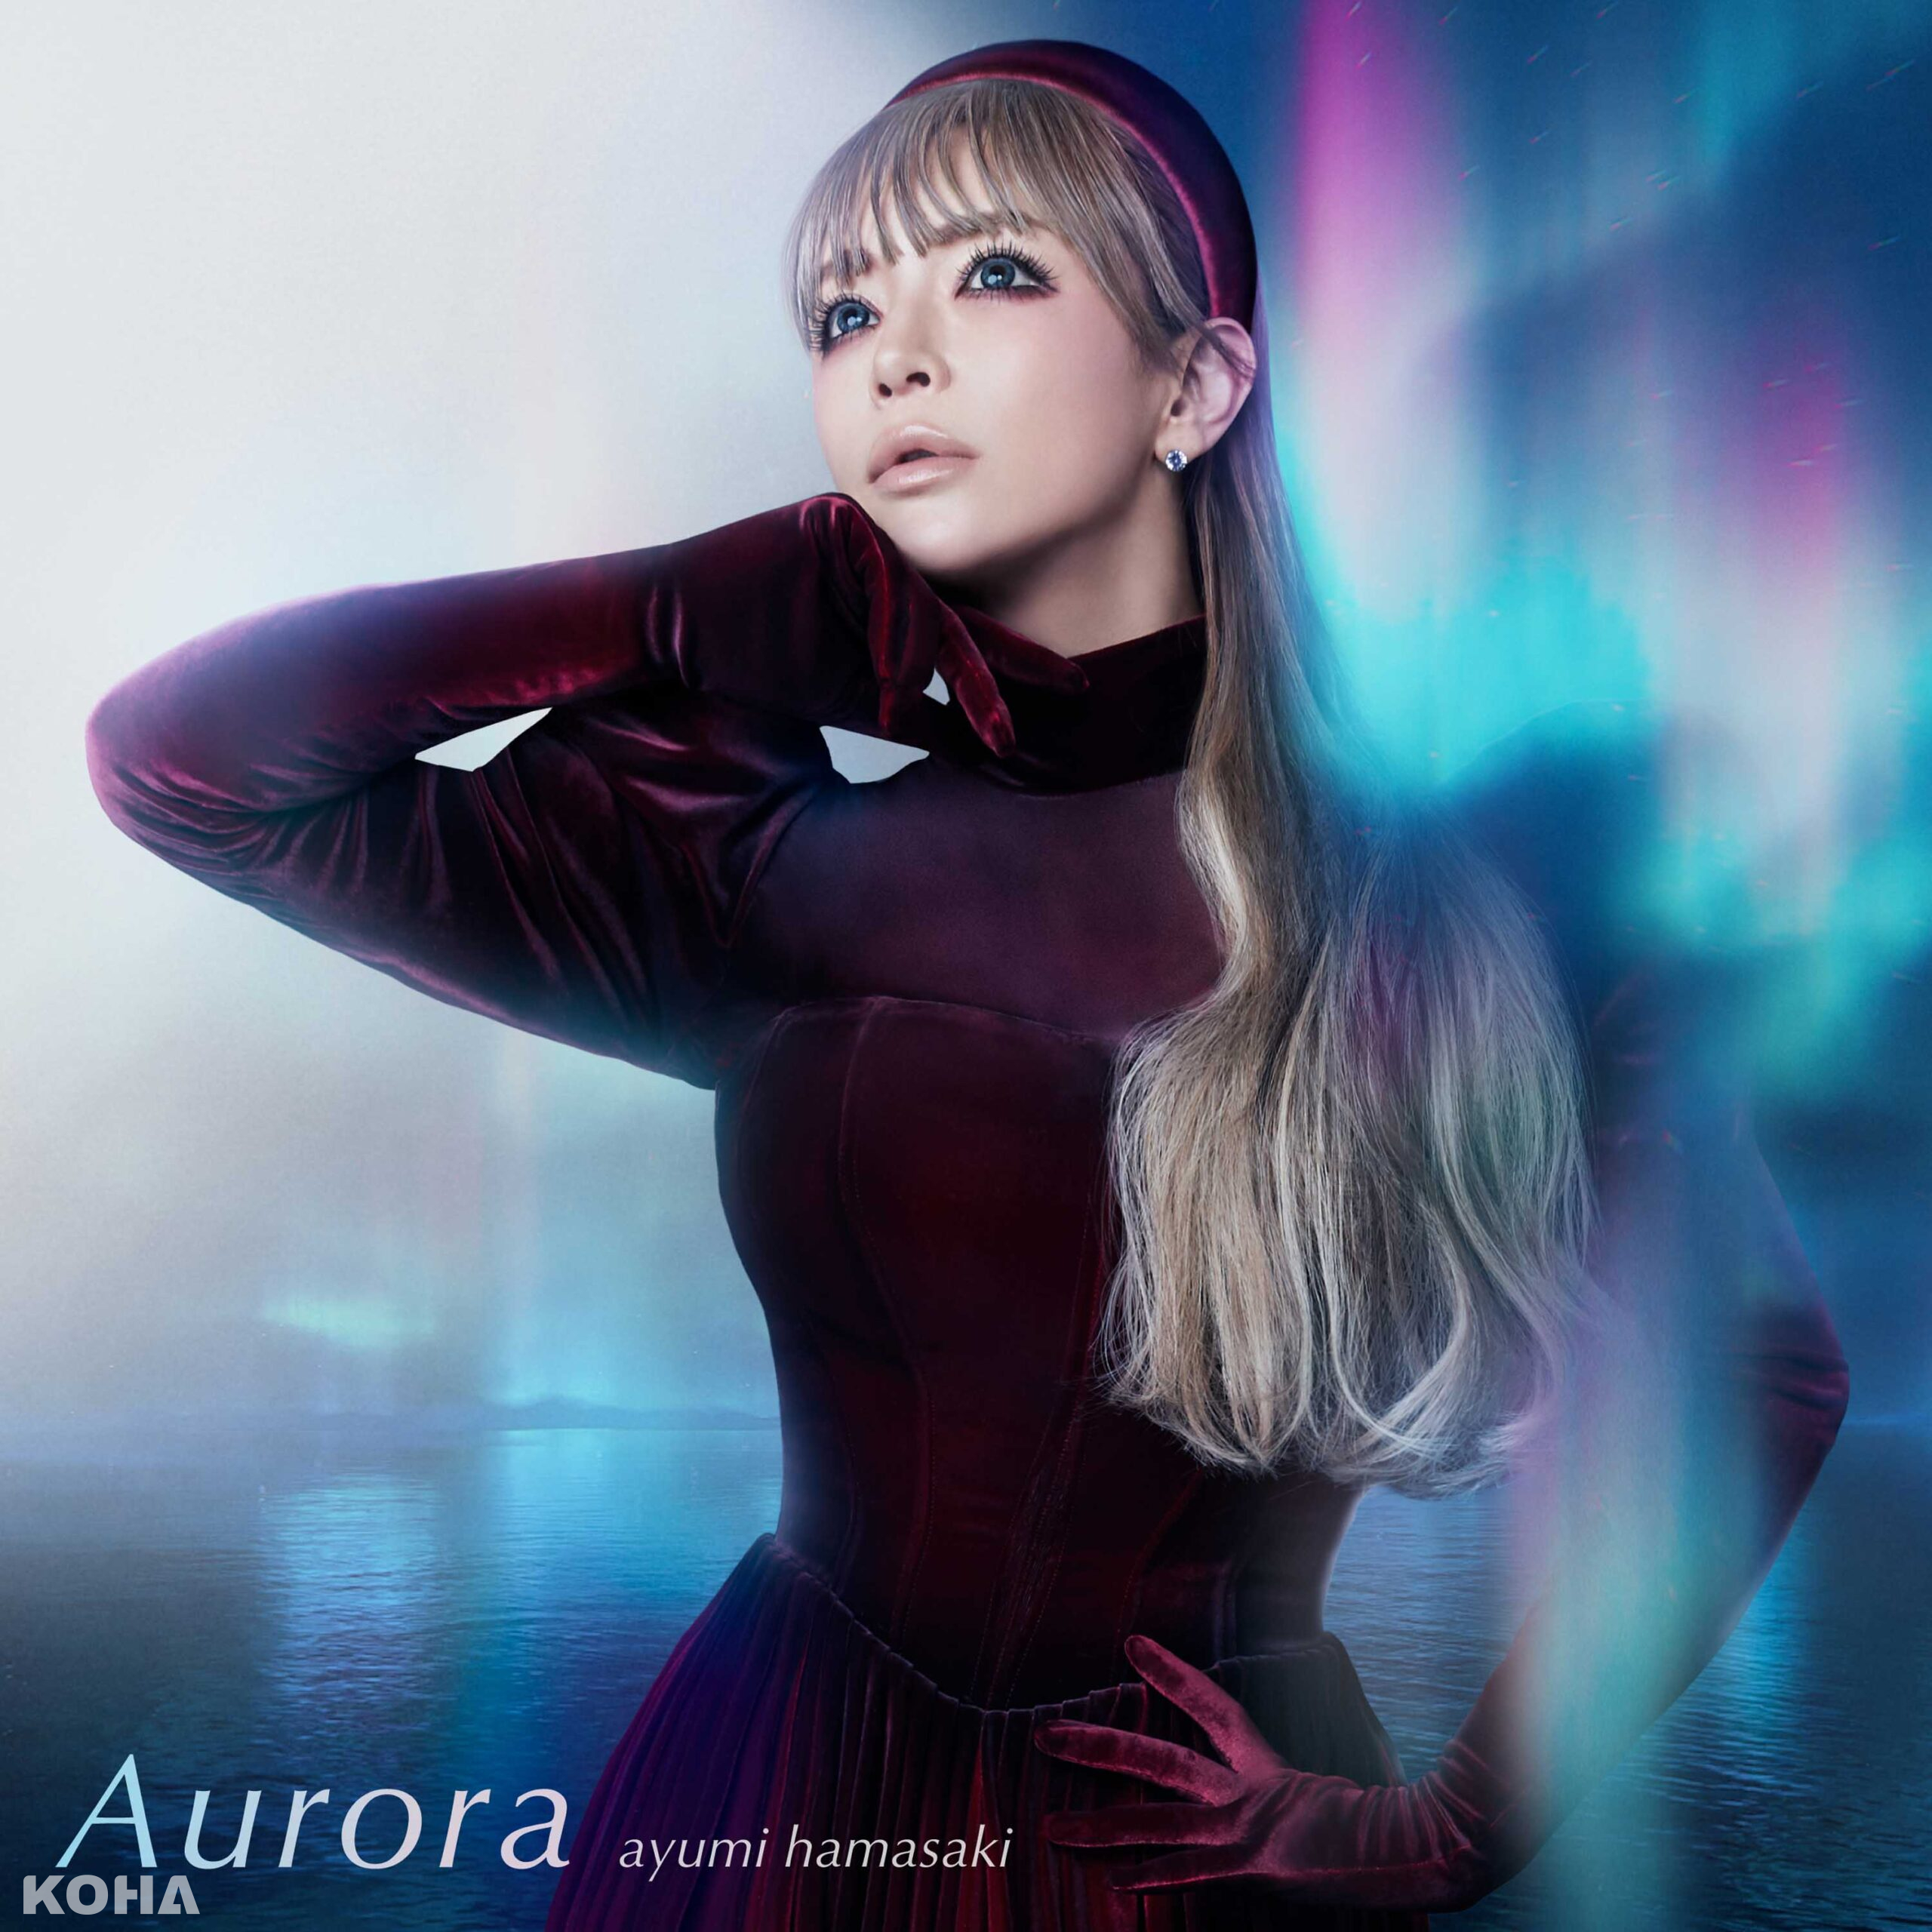 濱崎步發布遊戲《碧藍航線》7週年紀念主題曲「Aurora」